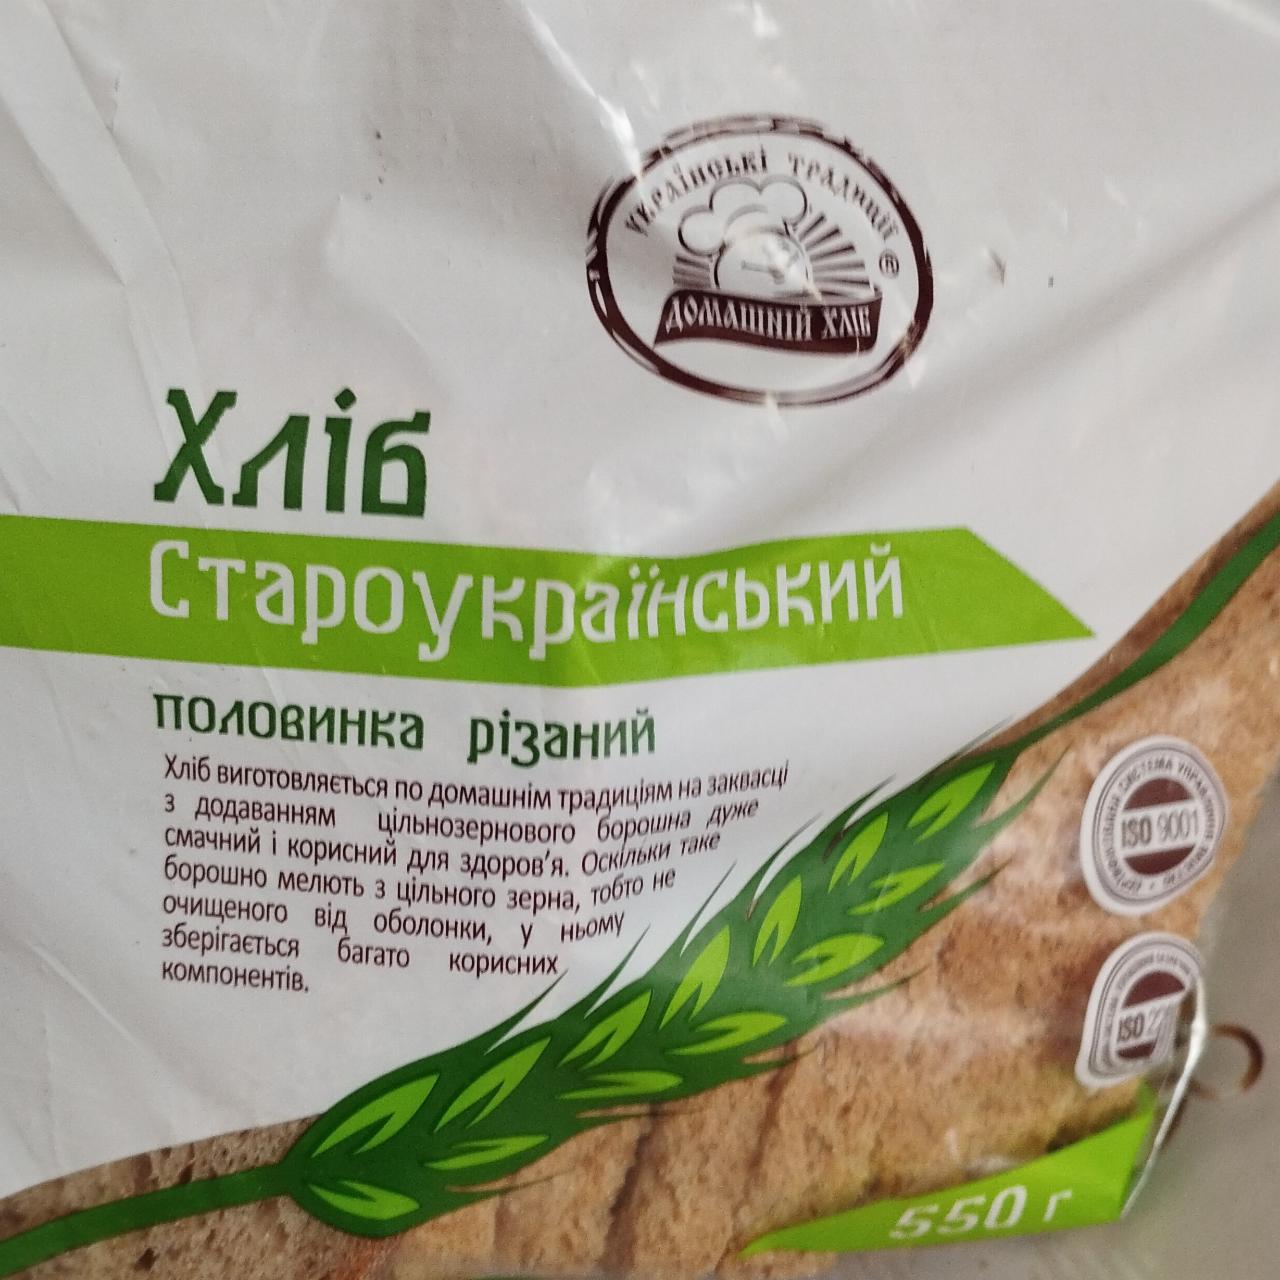 Фото - Хліб Староукраїнський половинка різаний Домашній хліб